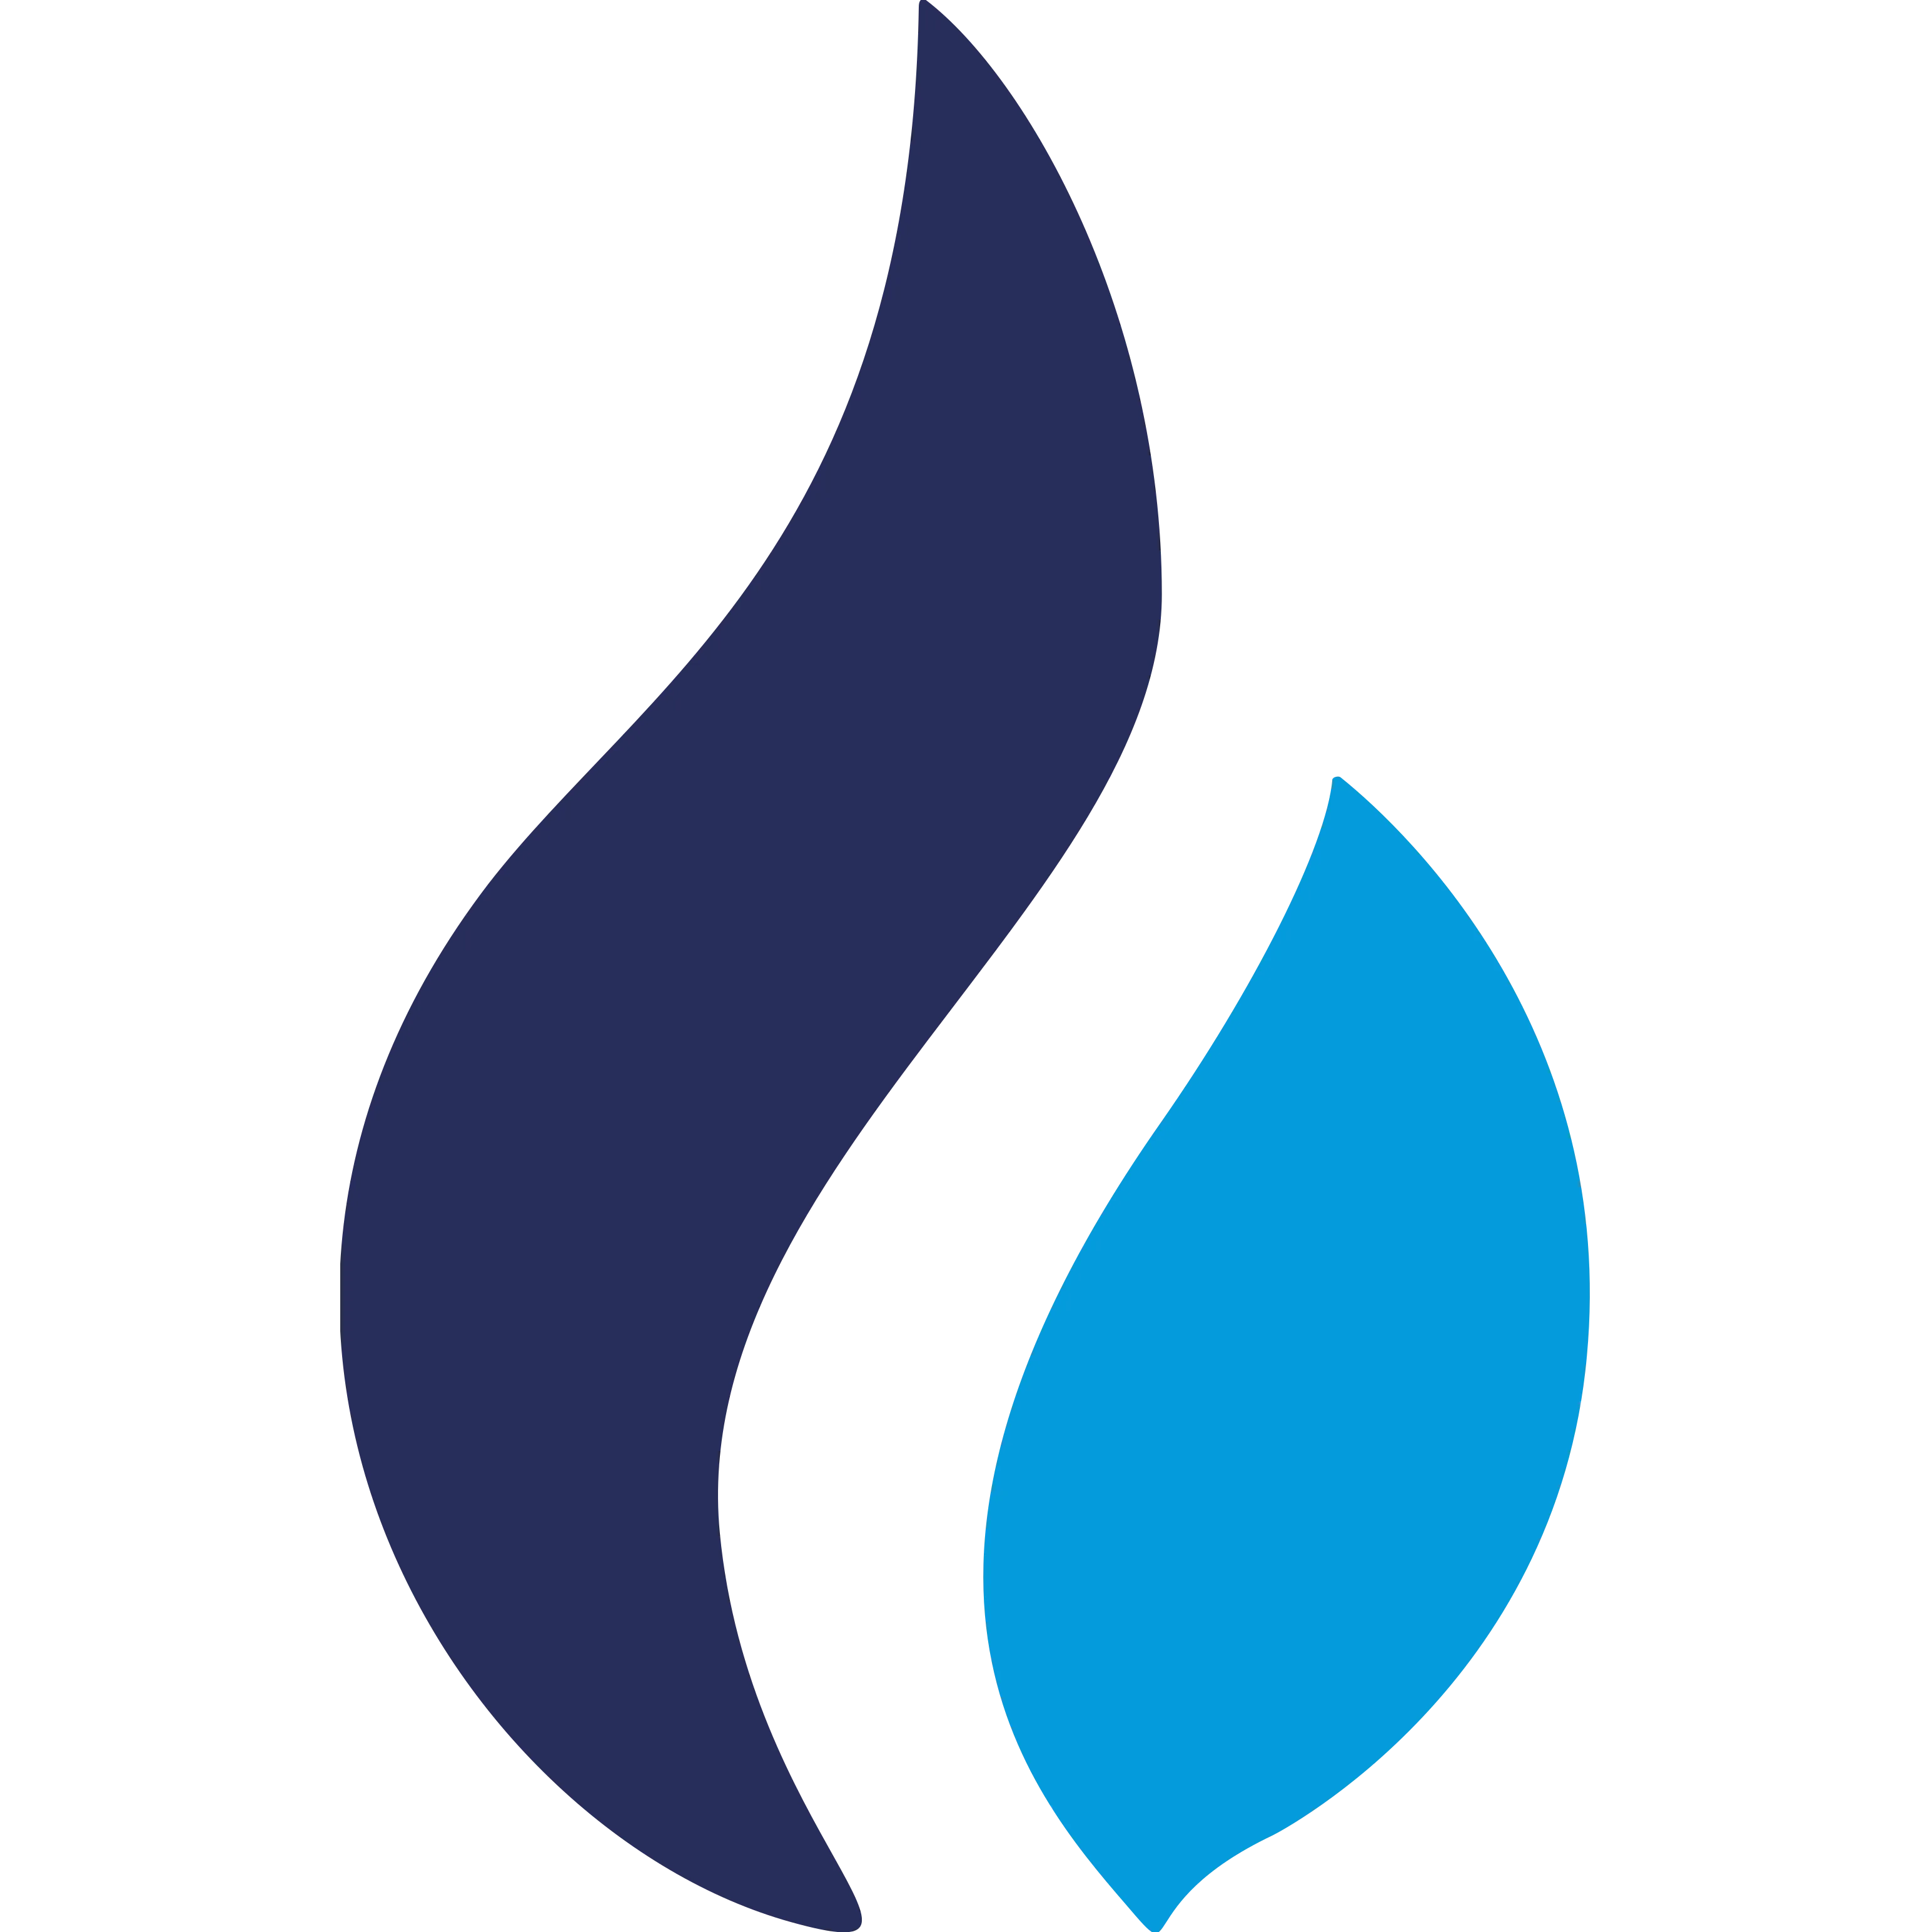 Huobi Token logo in png format